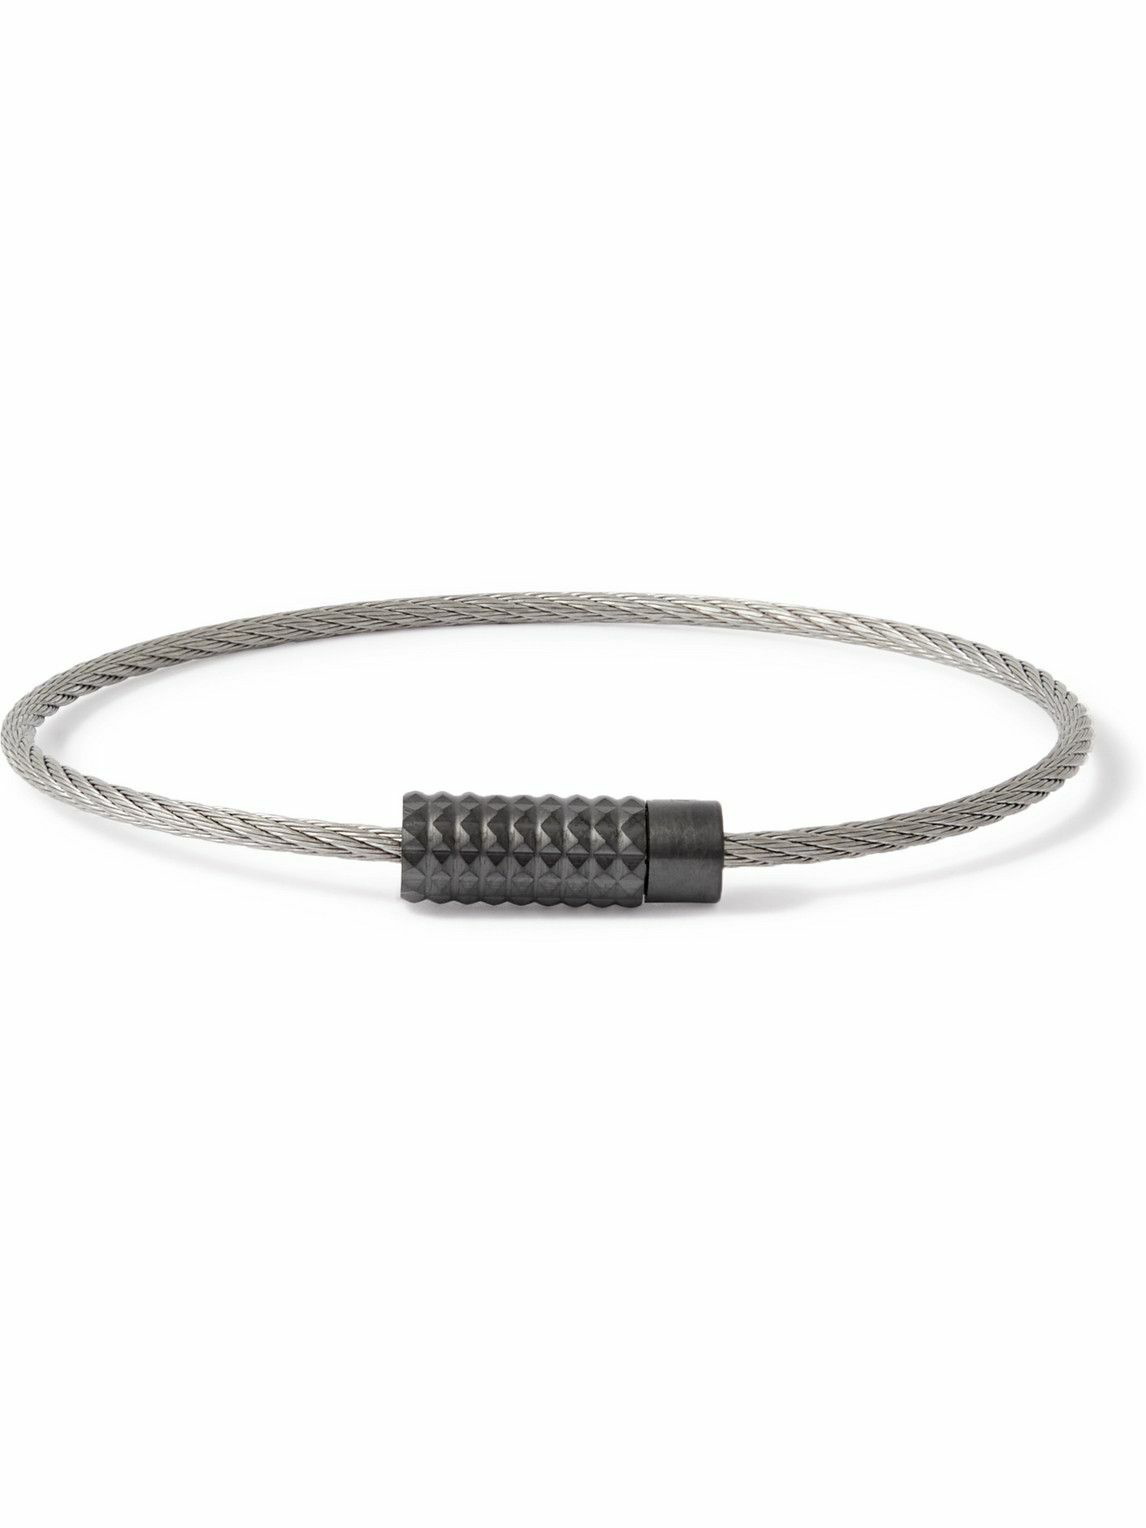 le gramme cable bracelet 9g SV925 20cm+apple-en.jp